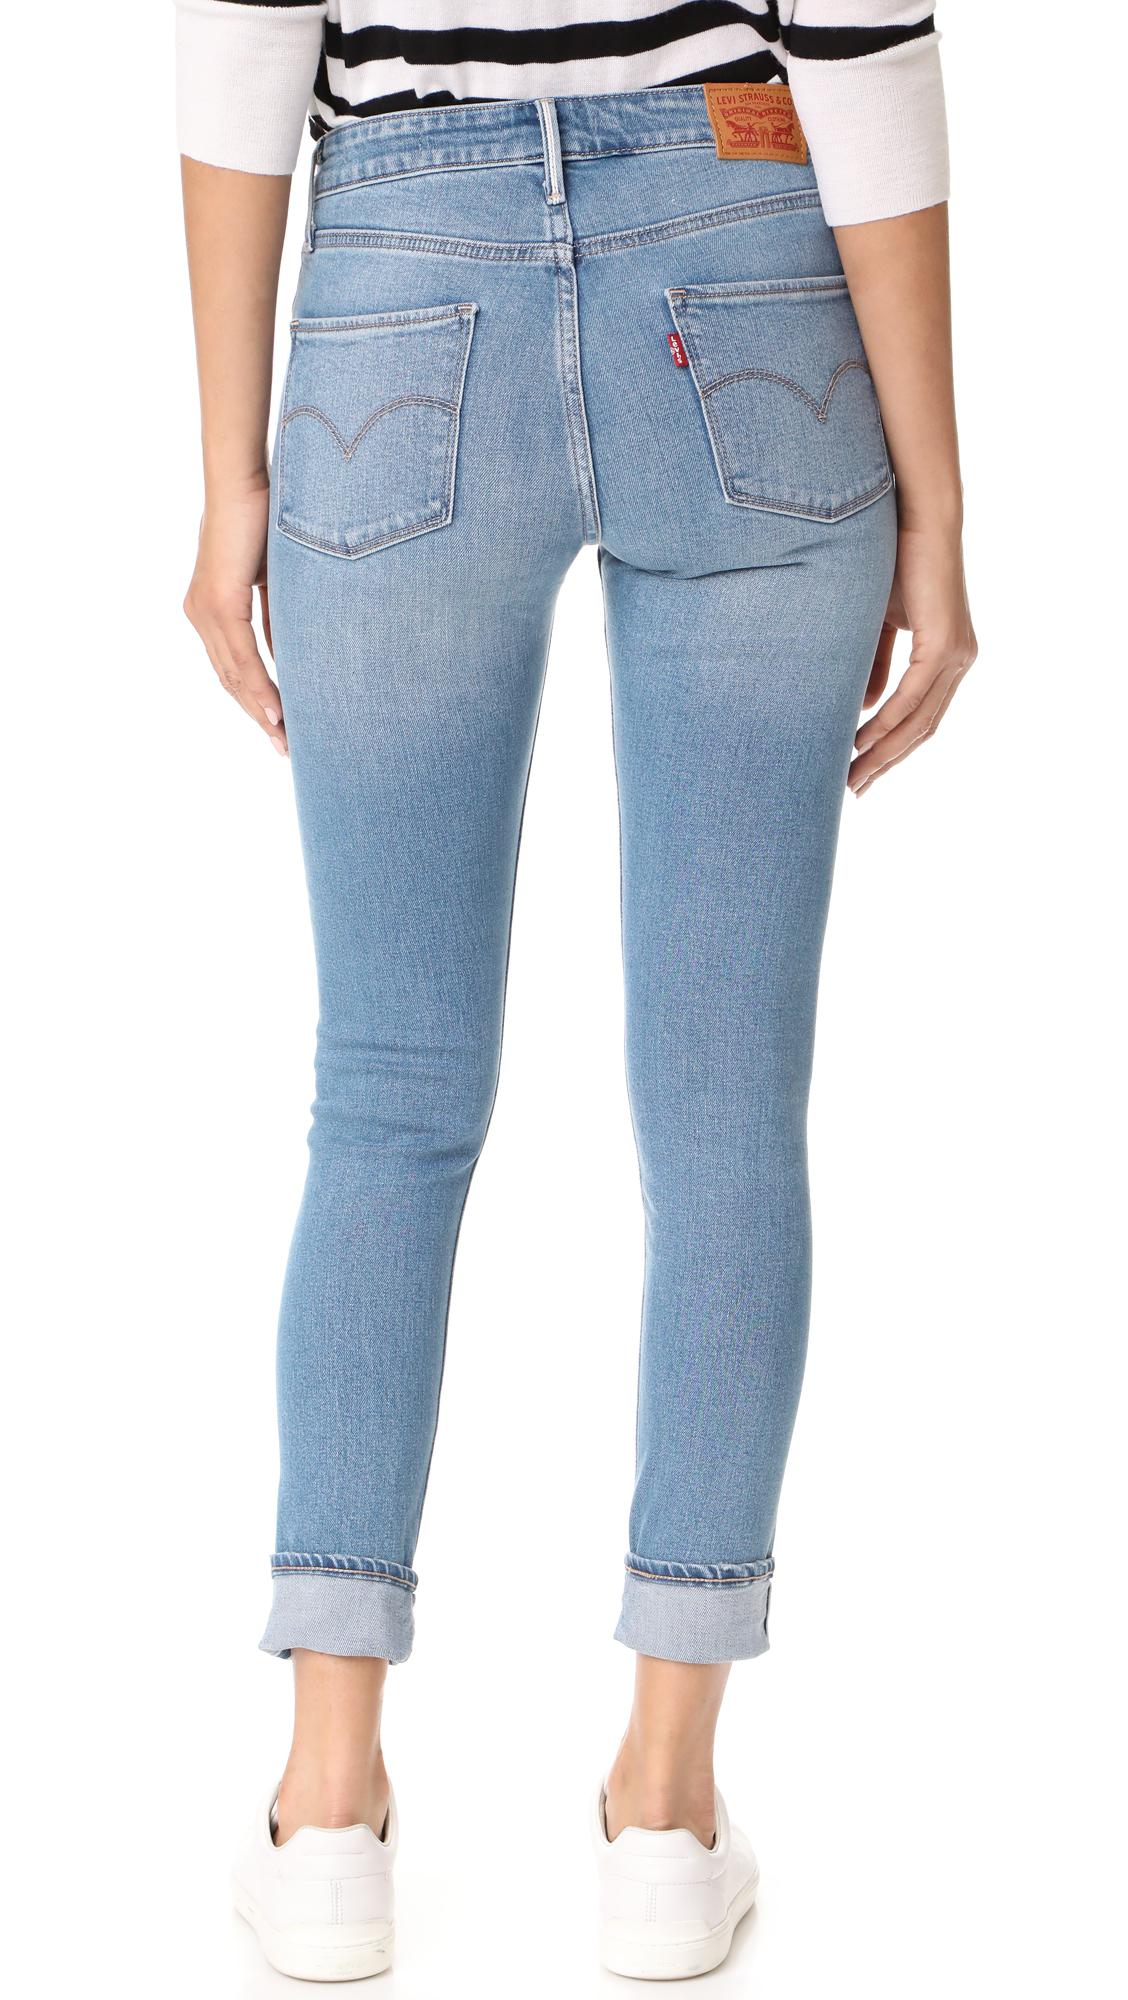 myer levis jeans